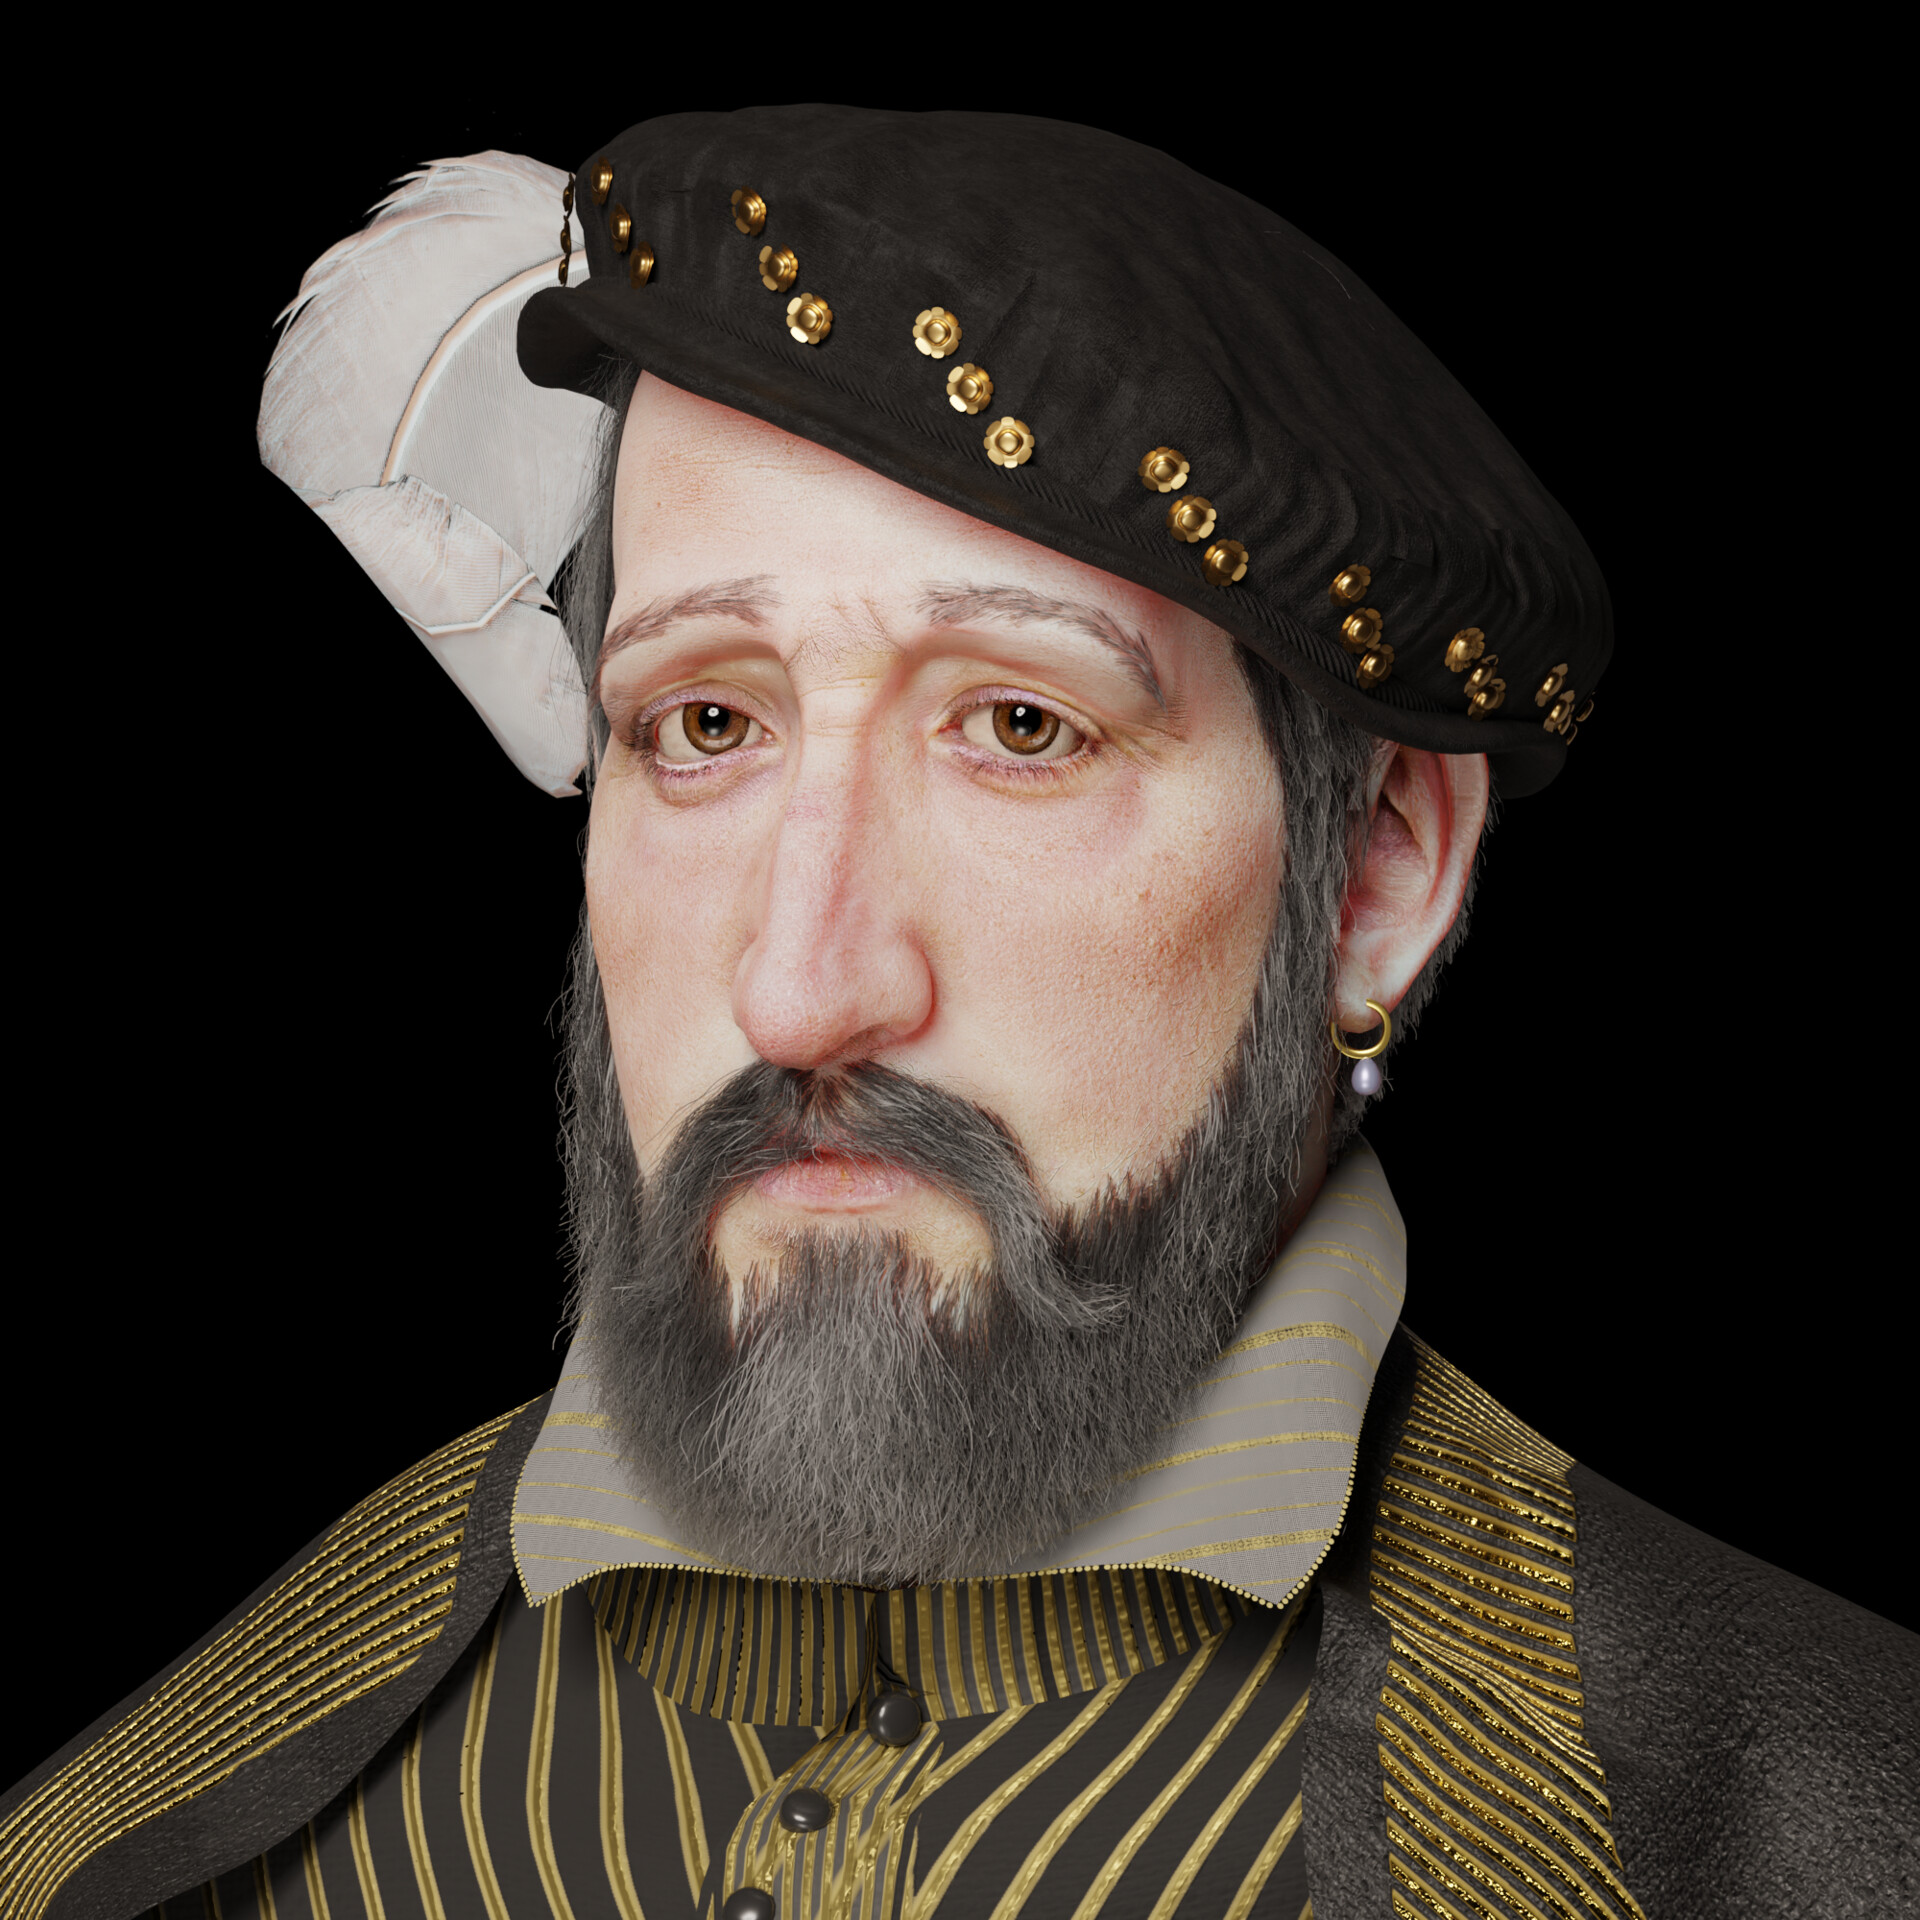 ArtStation - Henry II of France 1519 - 1559